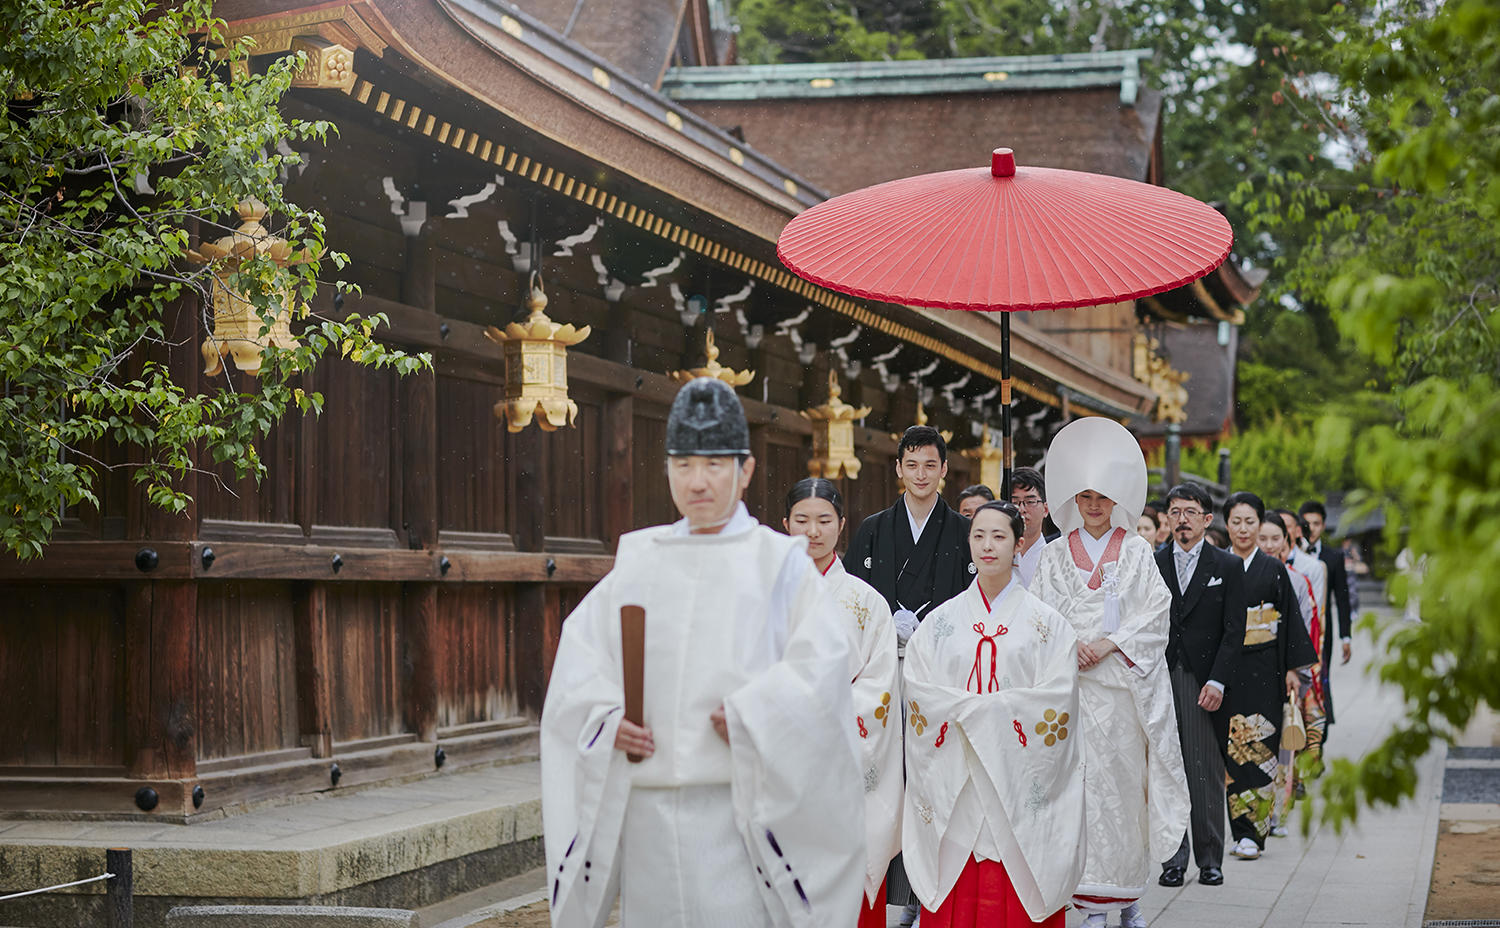 提携神社多数ご紹介可能
憧れの京都の神社式を叶える限定プラン